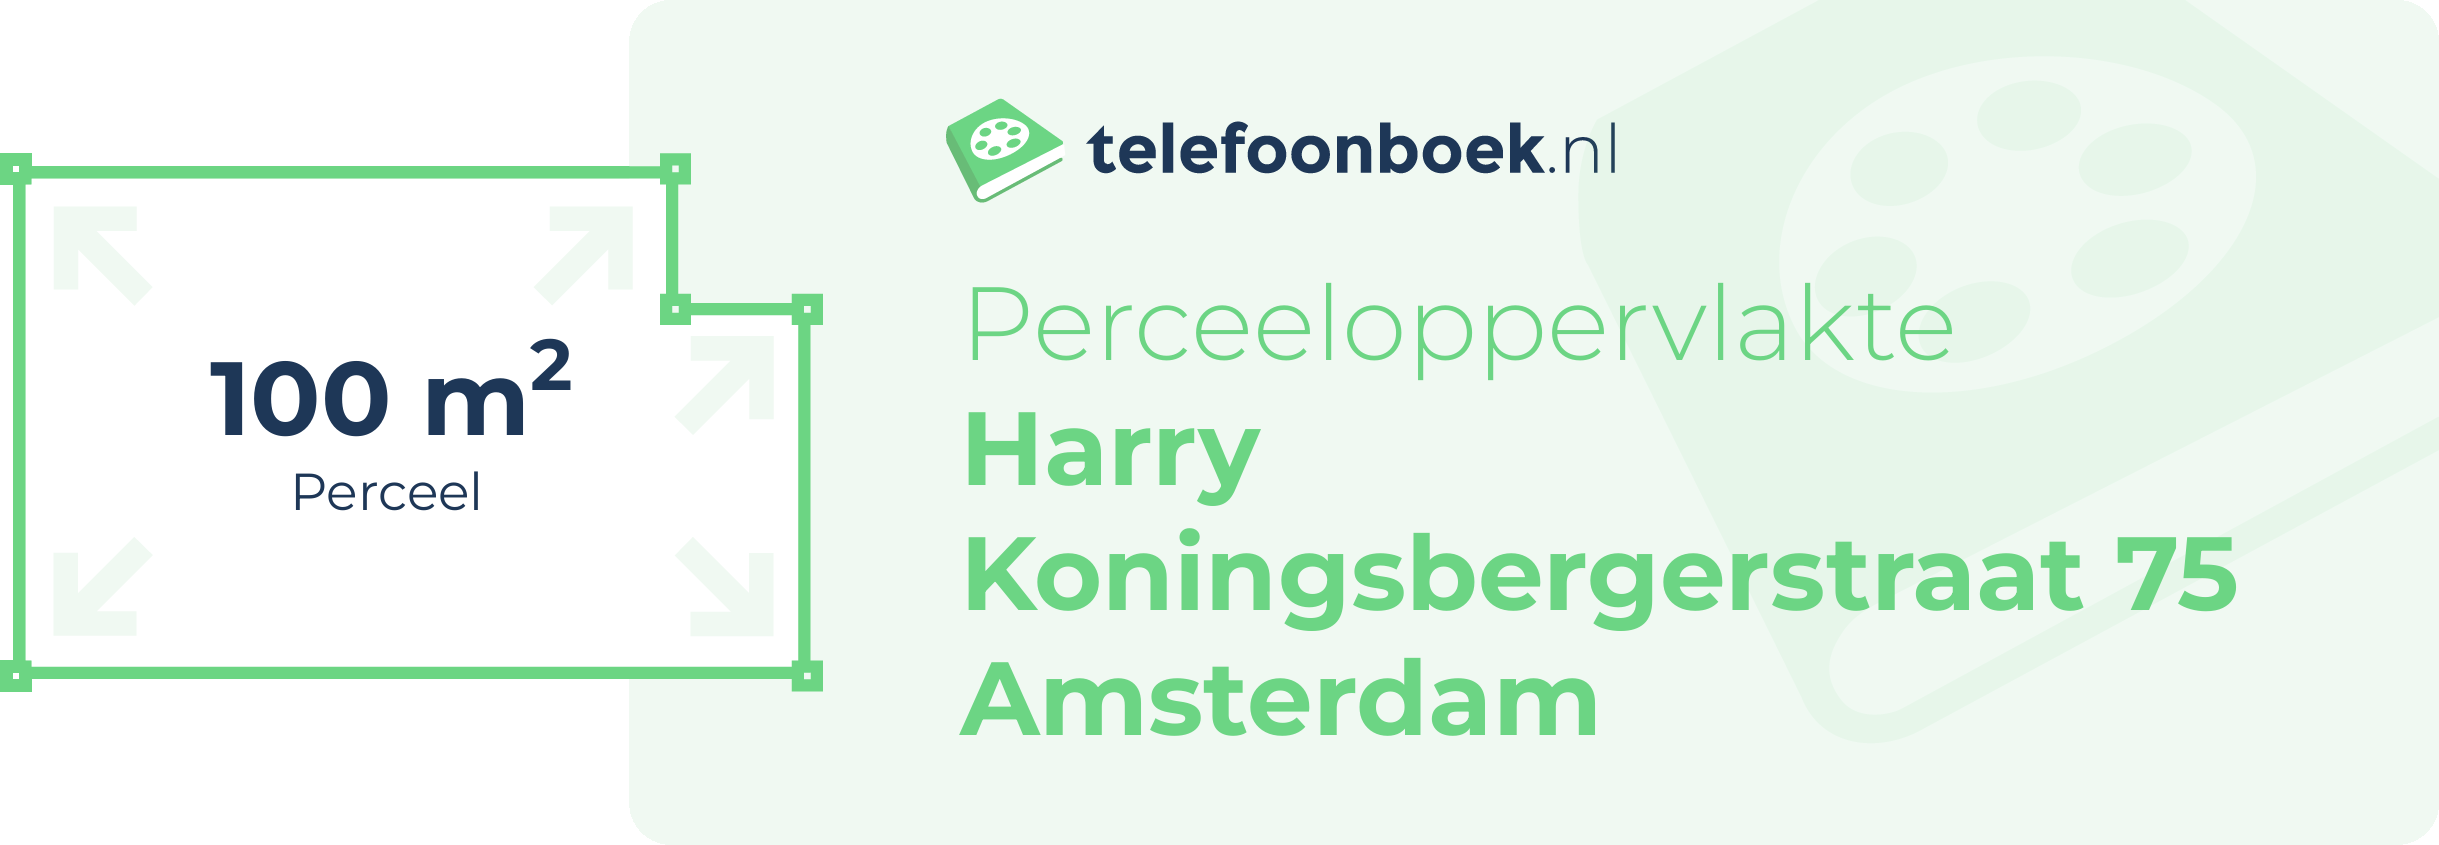 Perceeloppervlakte Harry Koningsbergerstraat 75 Amsterdam